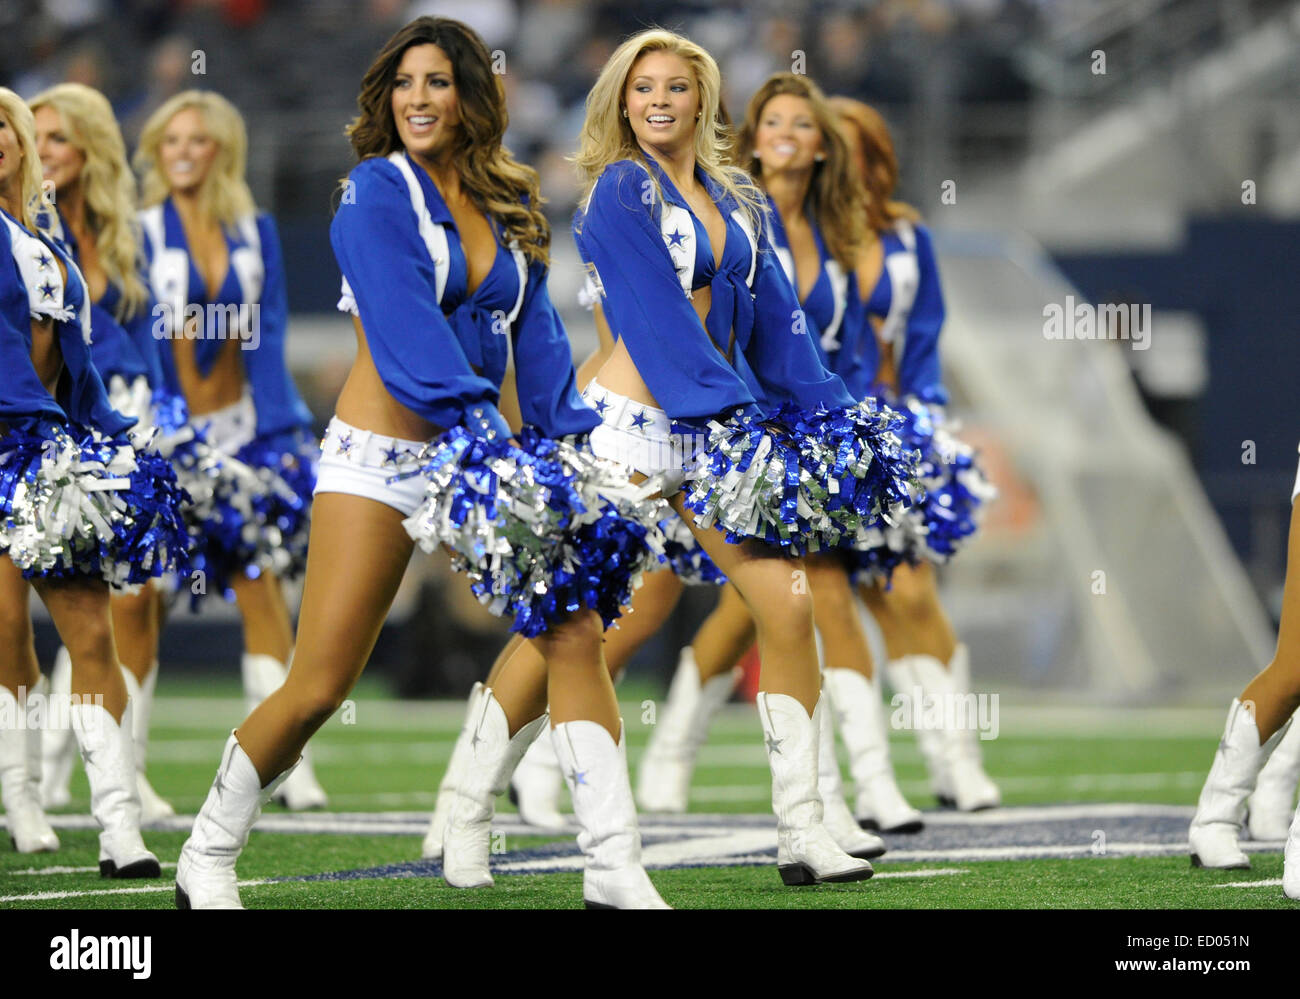 21 décembre 2014 : les Dallas Cowboys Cheerleaders effectuer lors d'un match de football entre les NFL Indianapolis Colts et les Dallas Cowboys à AT&T Stadium à Arlington, TX Dallas battu Indianapolis 42-7 pour remporter le championnat de l'Est NFC Banque D'Images